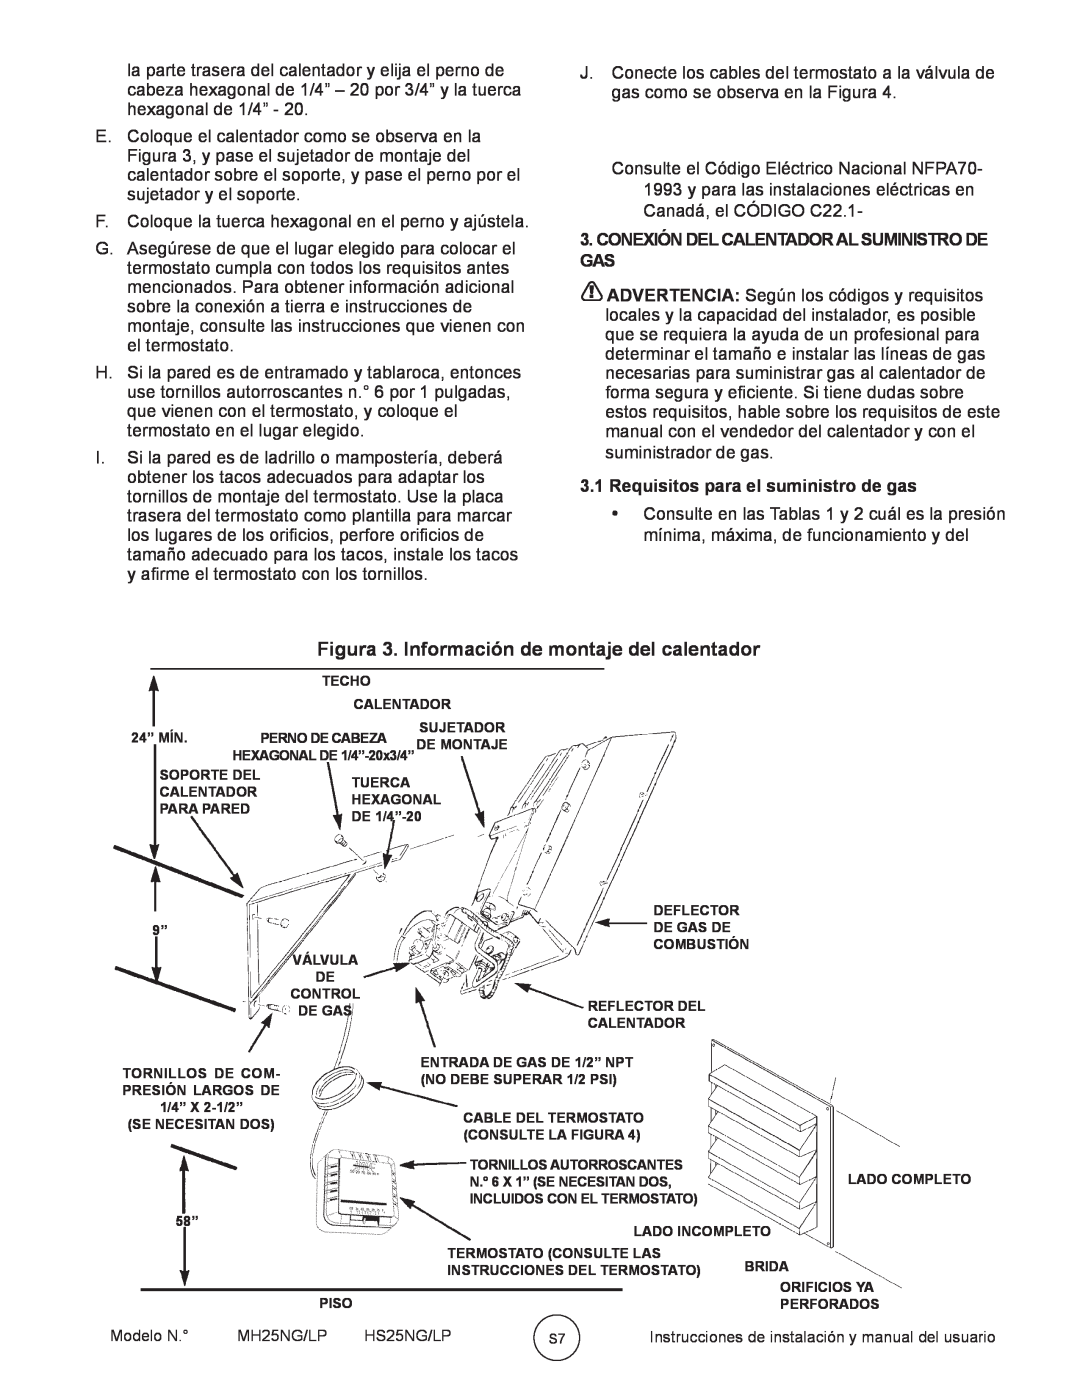 Mr. Heater HS25NG/LP Figura 3. Información de montaje del calentador, Conexión Del Calentador Al Suministro De Gas 